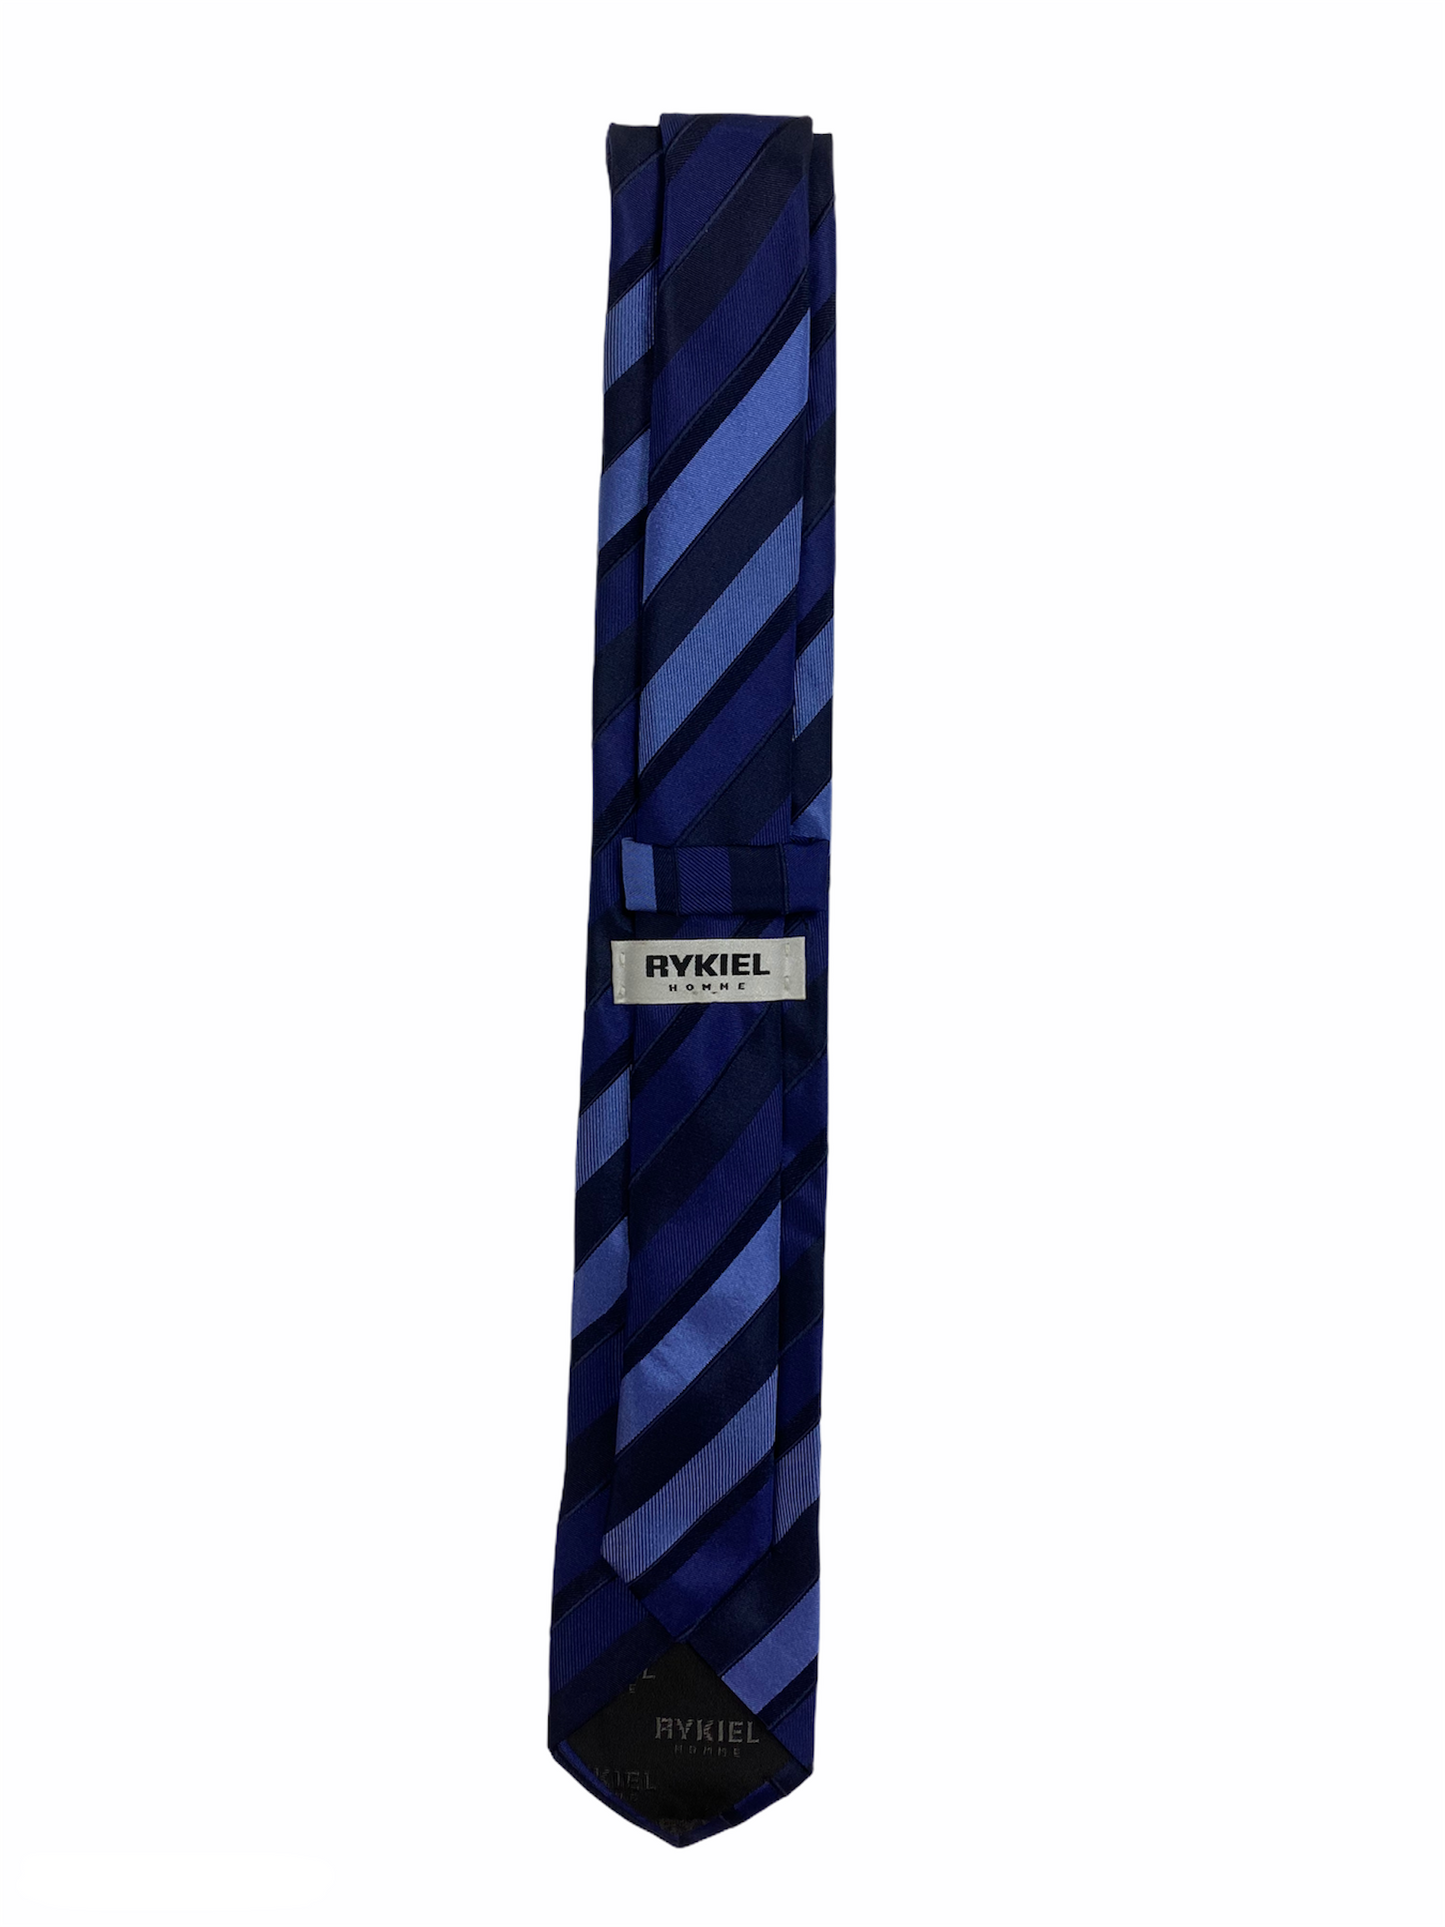 Cravate Rykiel bleu